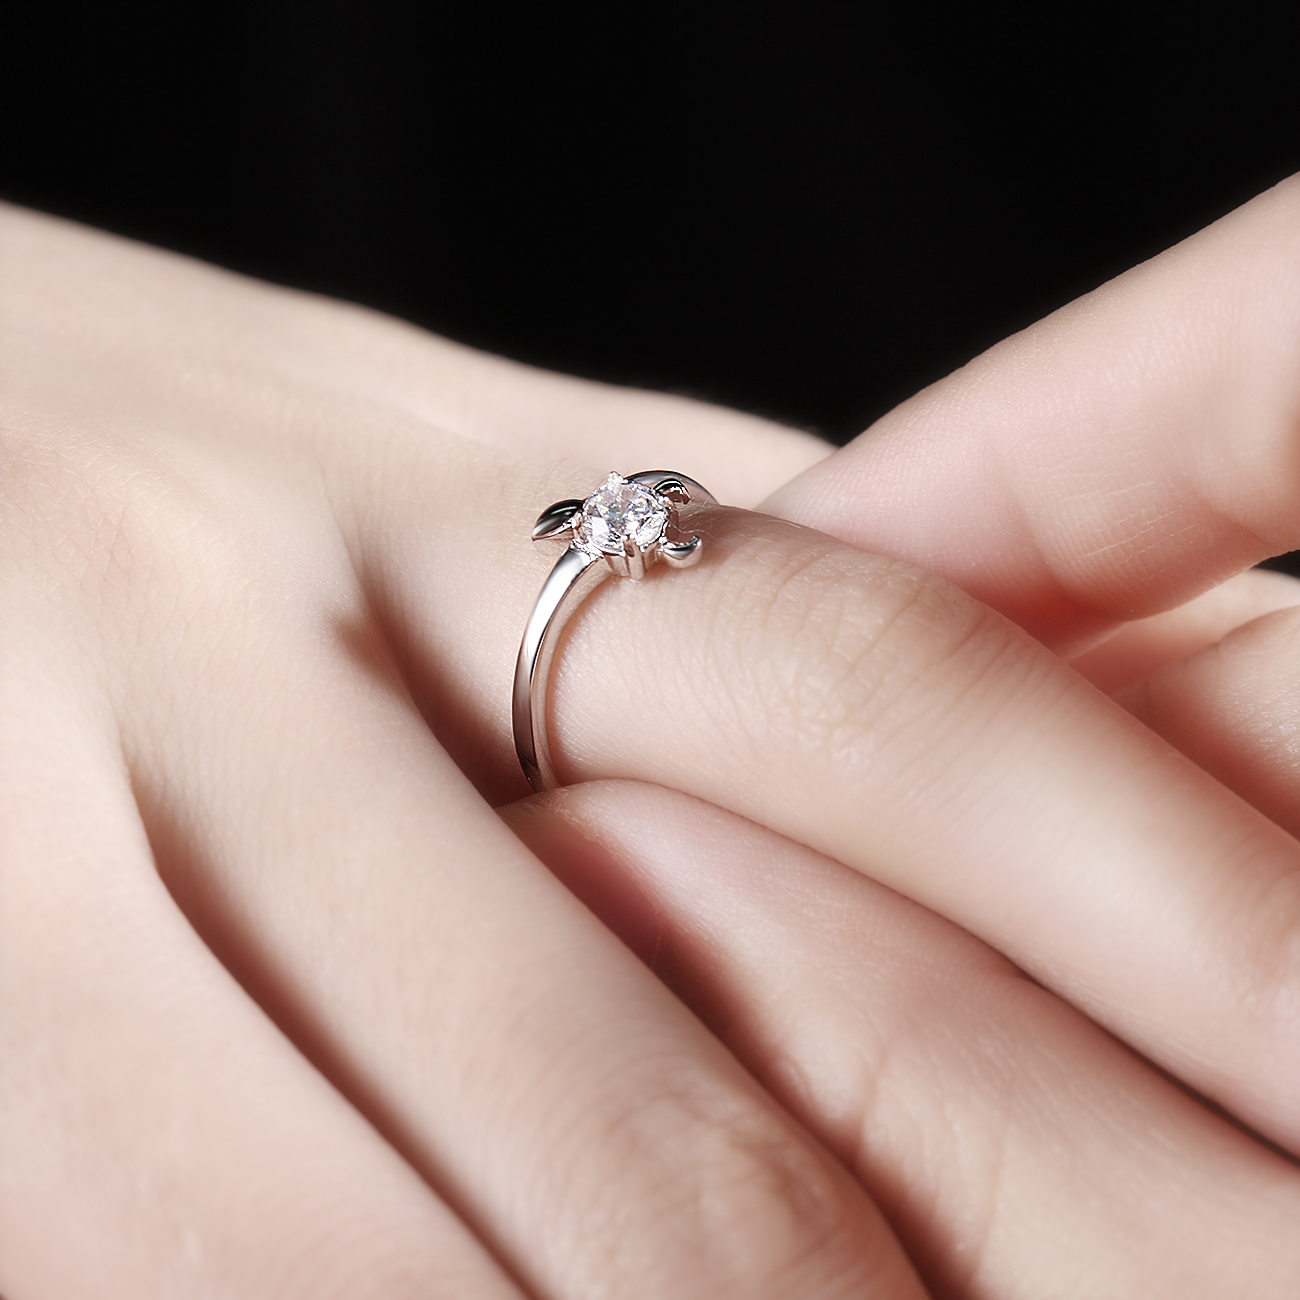 戒指戴在每个手指的含义是什么？十个手指戴戒指分别是什么意思 – 我爱钻石网官网